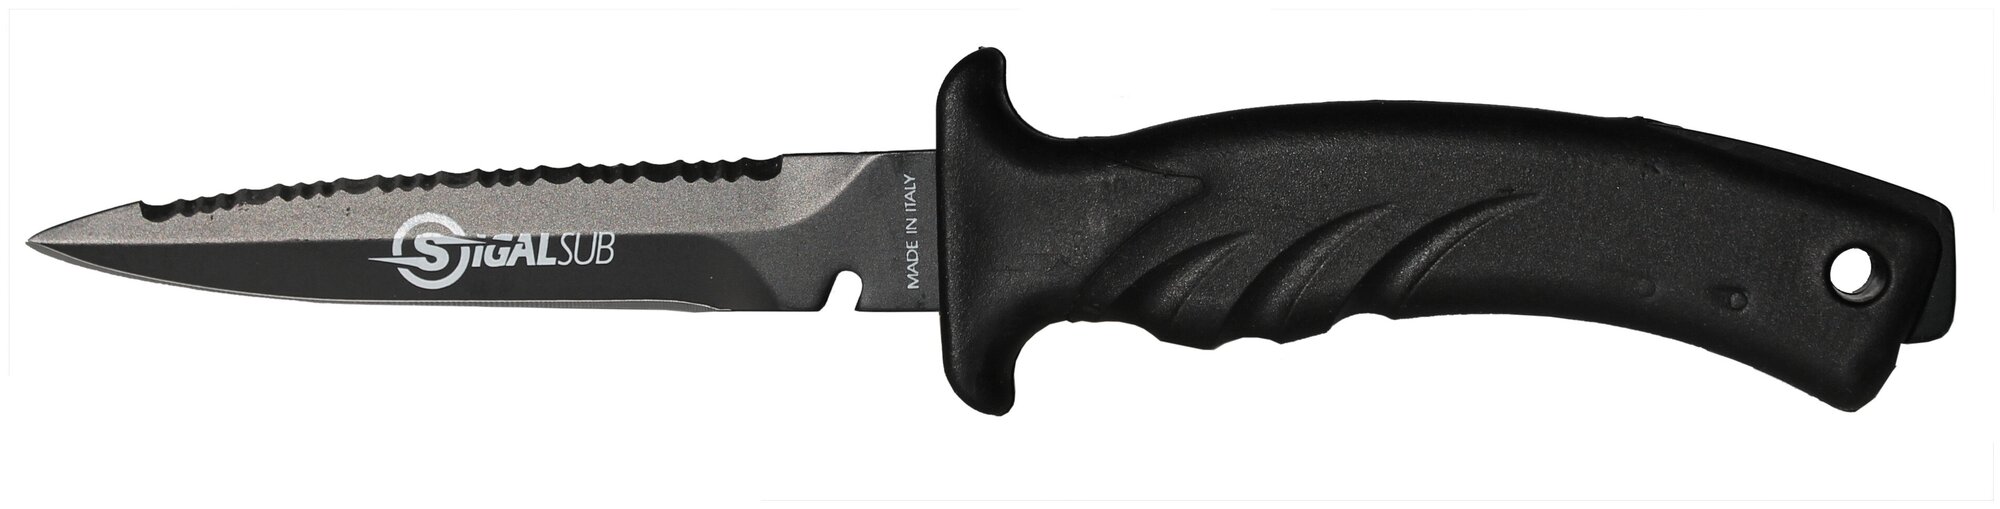 Нож для дайвинга SIGALSUB TORPEDO, длина 23 см